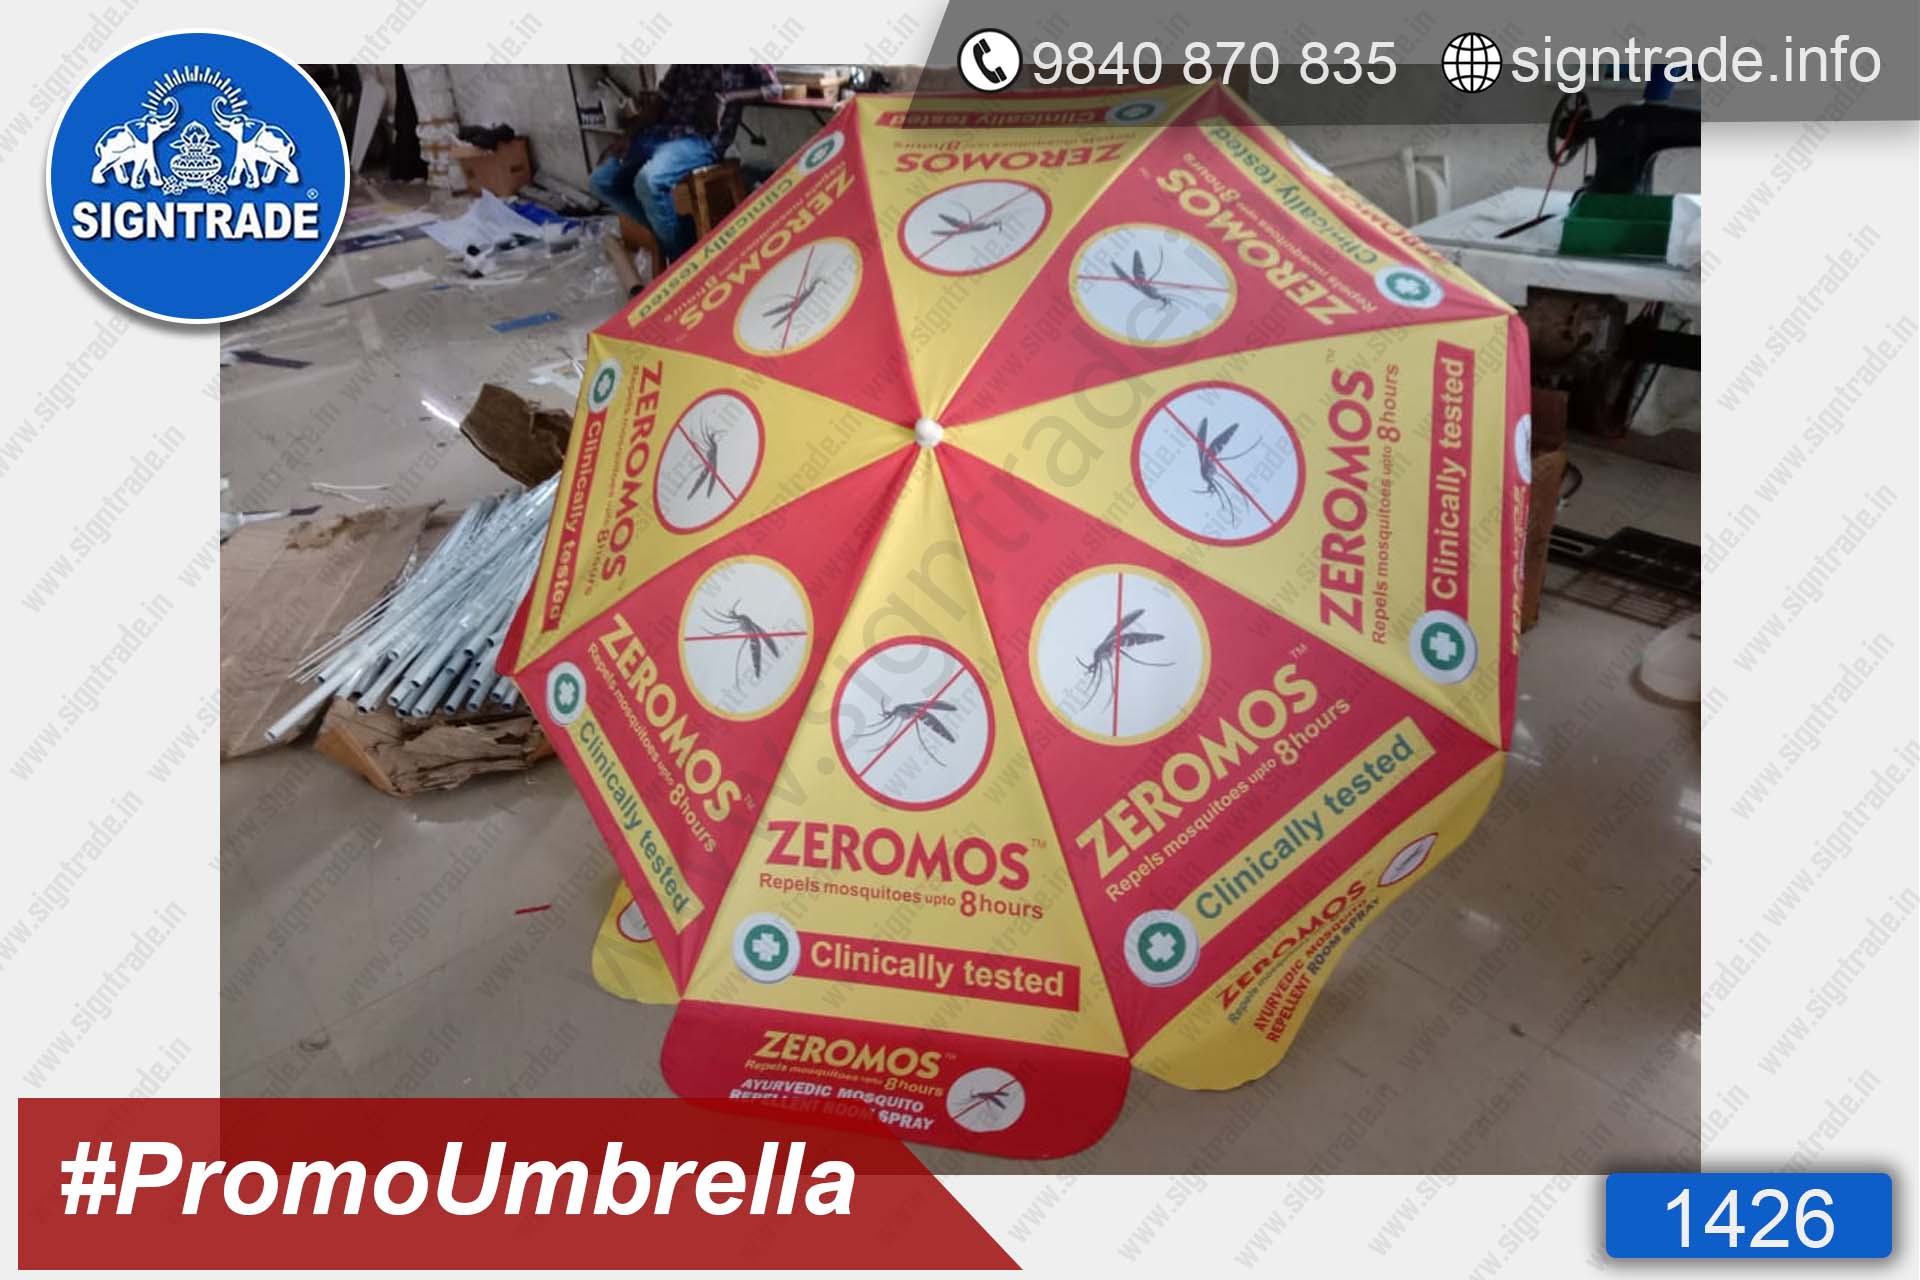 Zeromos Natural Mosquito Repellent Spray - 1426, Promotional Umbrella, Umbrella, Promo Umbrella, Advertising Umbrella, Big Umbrella, Large Umbrella, Printed Umbrella